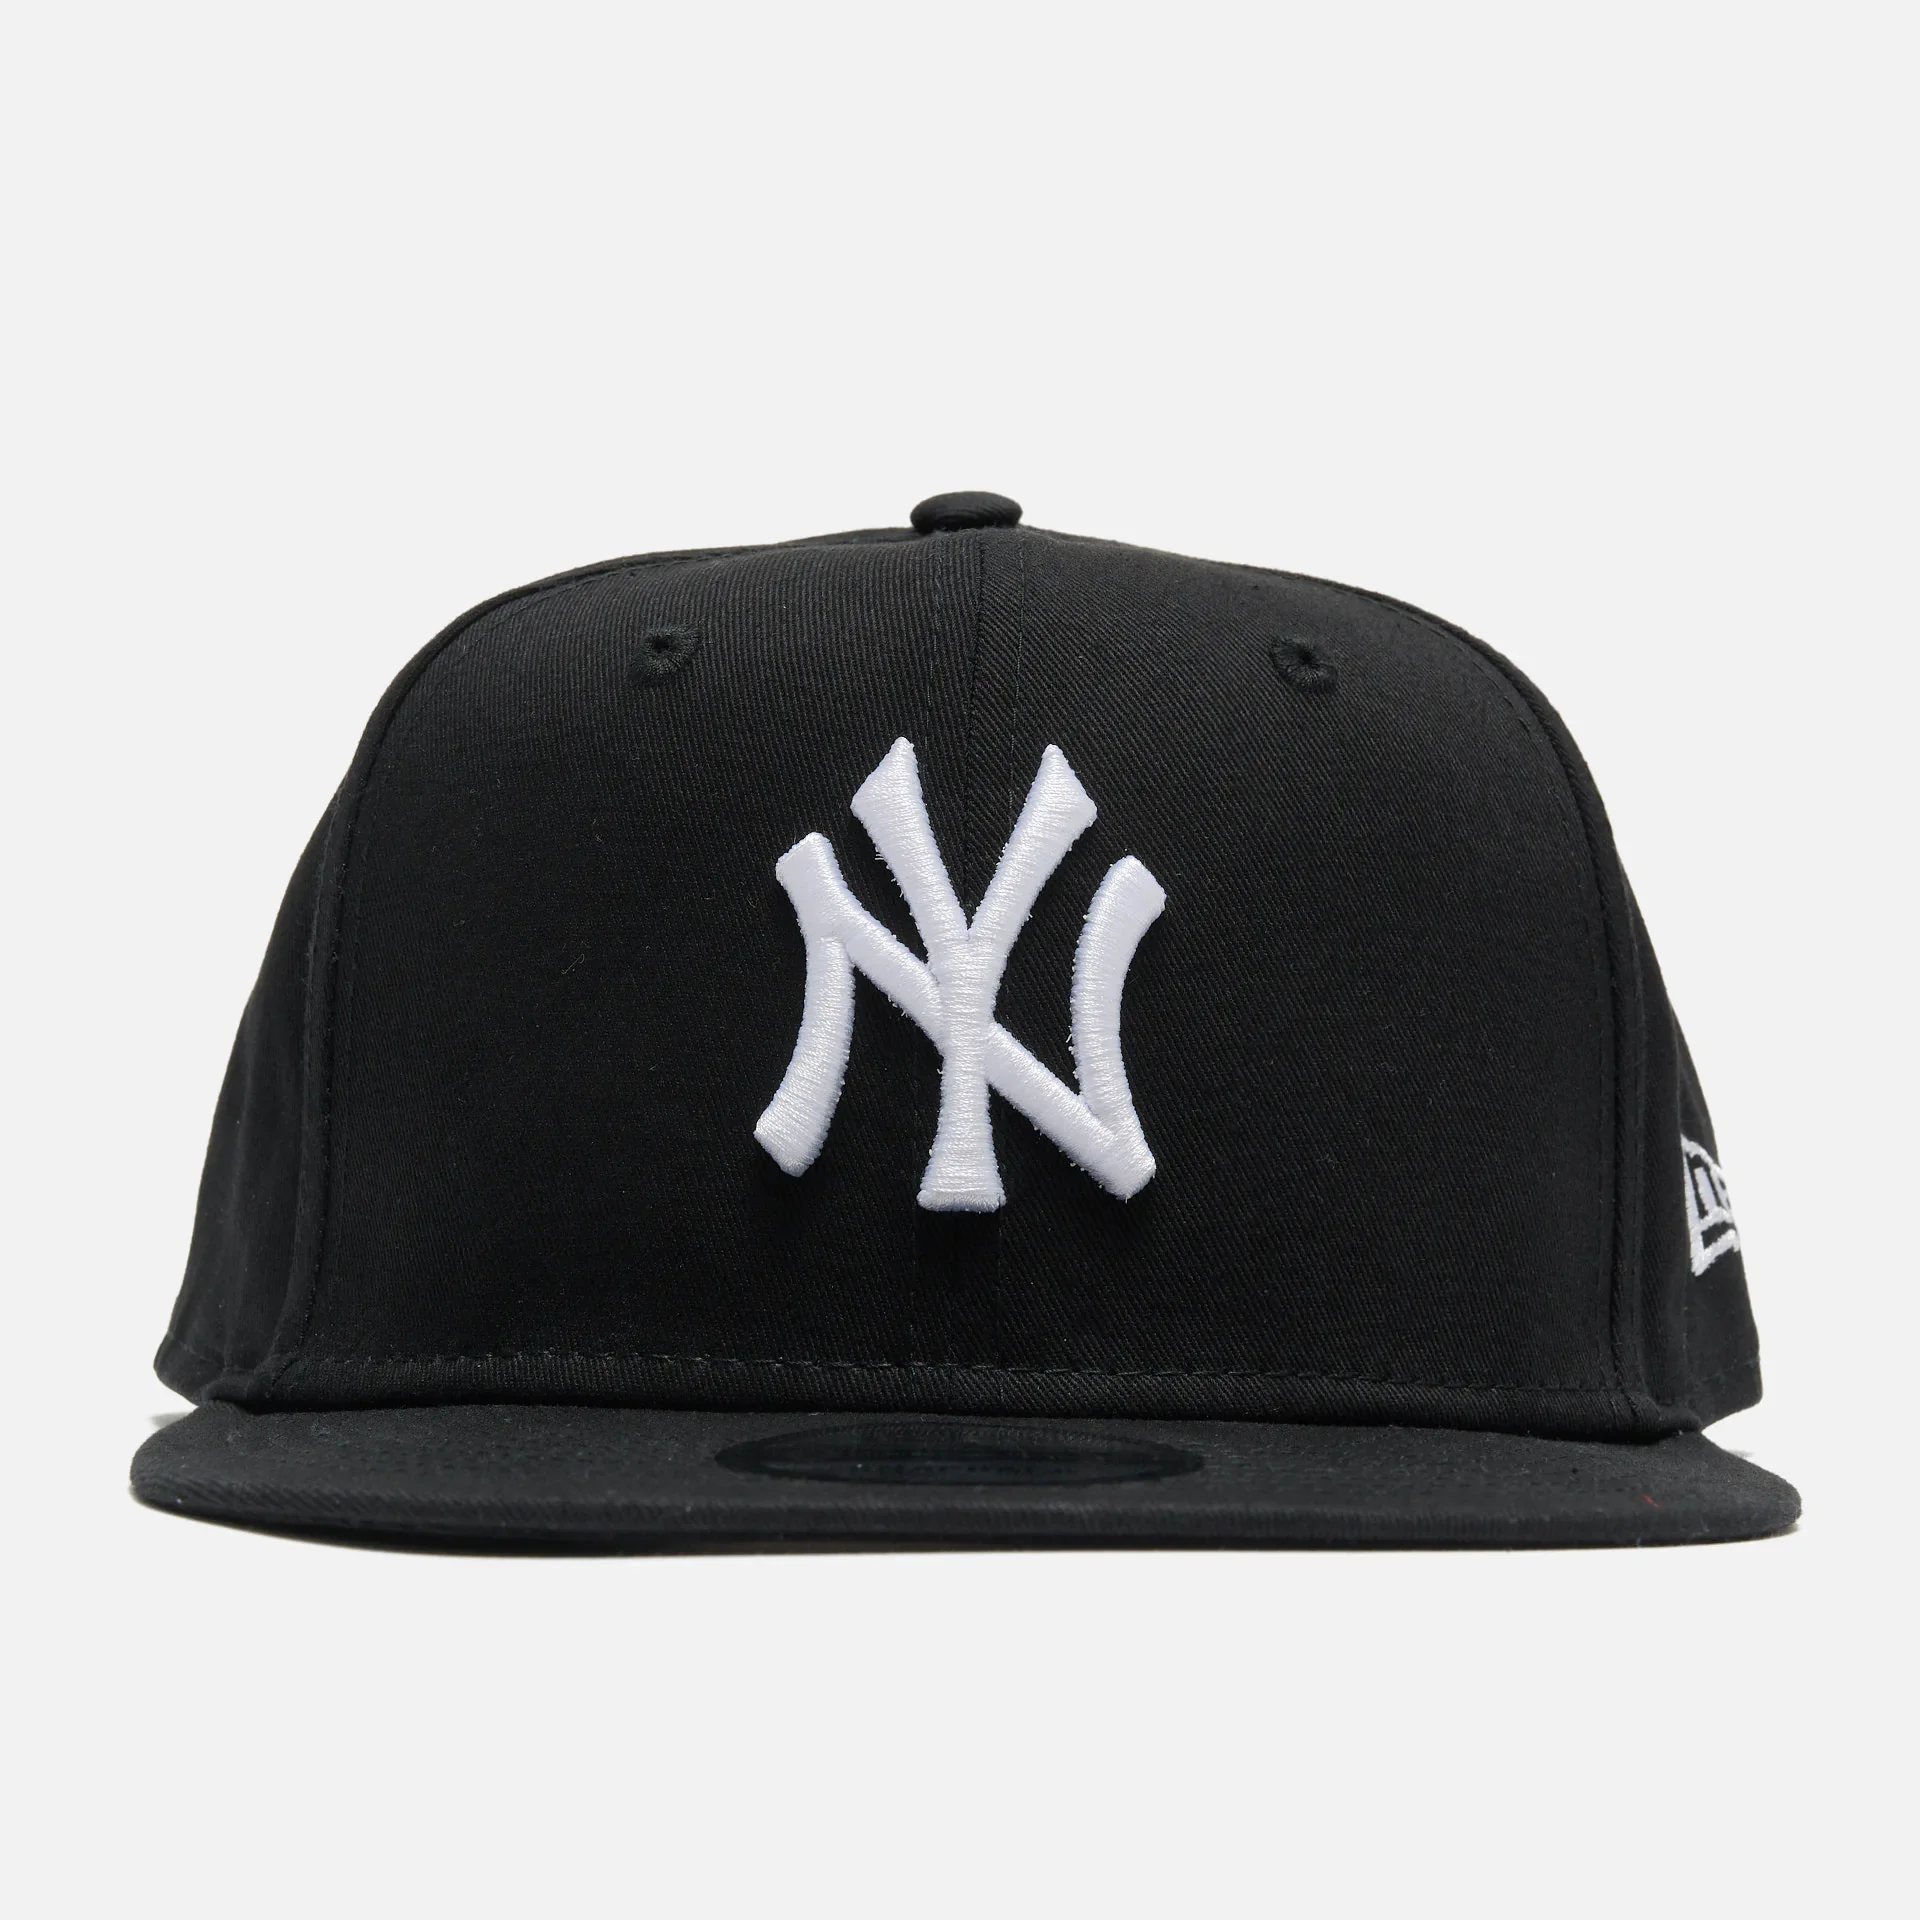 New Era MLB 9Fifty NY Yankees 9Fifty Snapback Cap Black/White